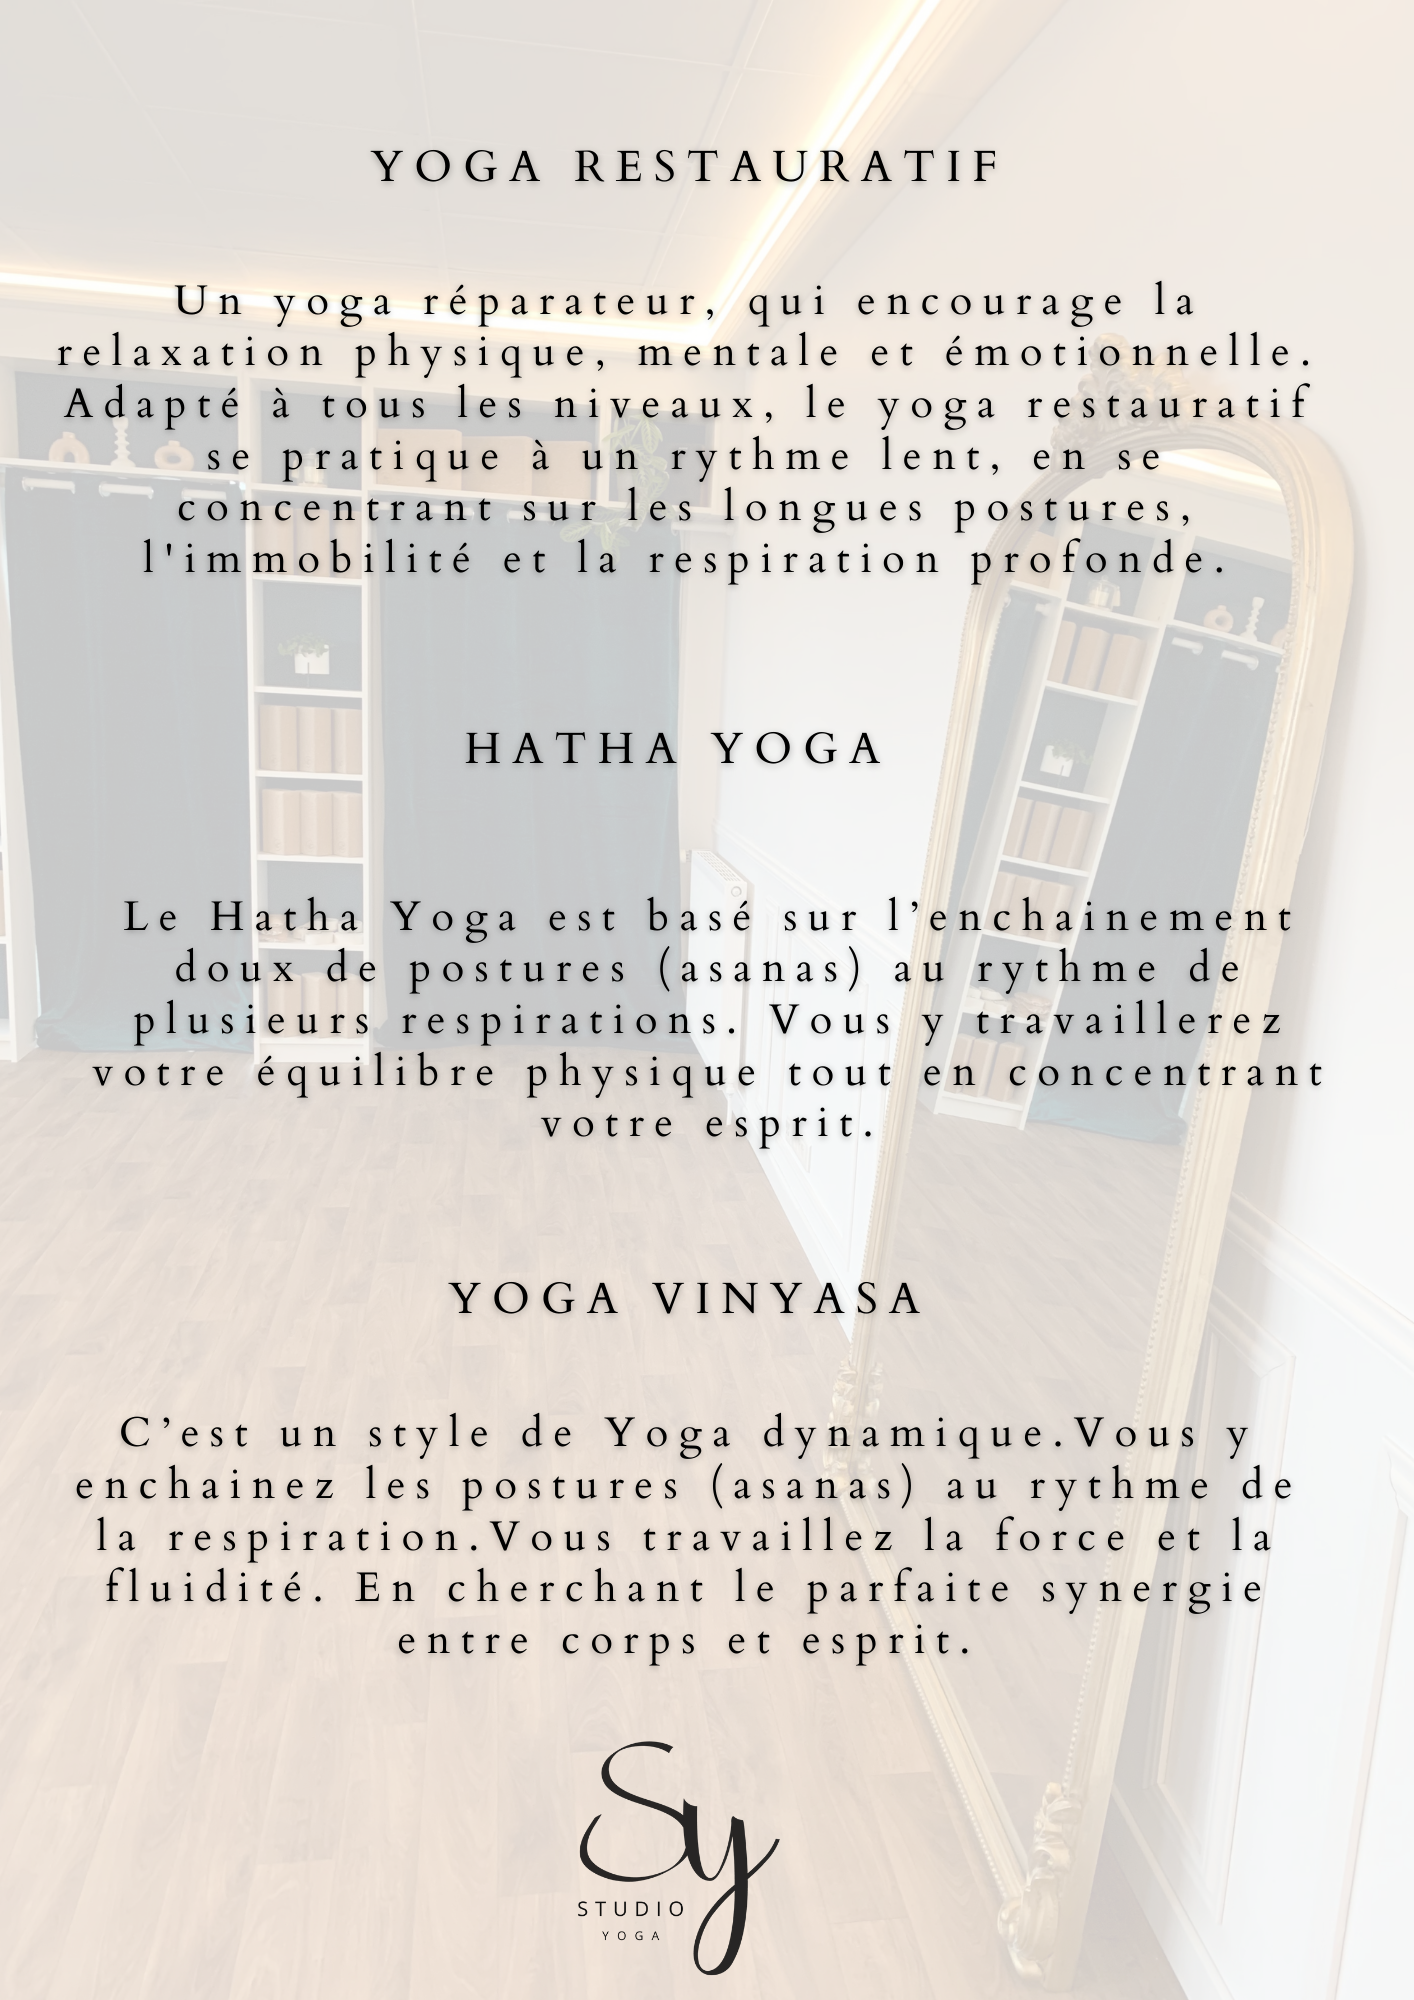 Les types de Yoga proposés